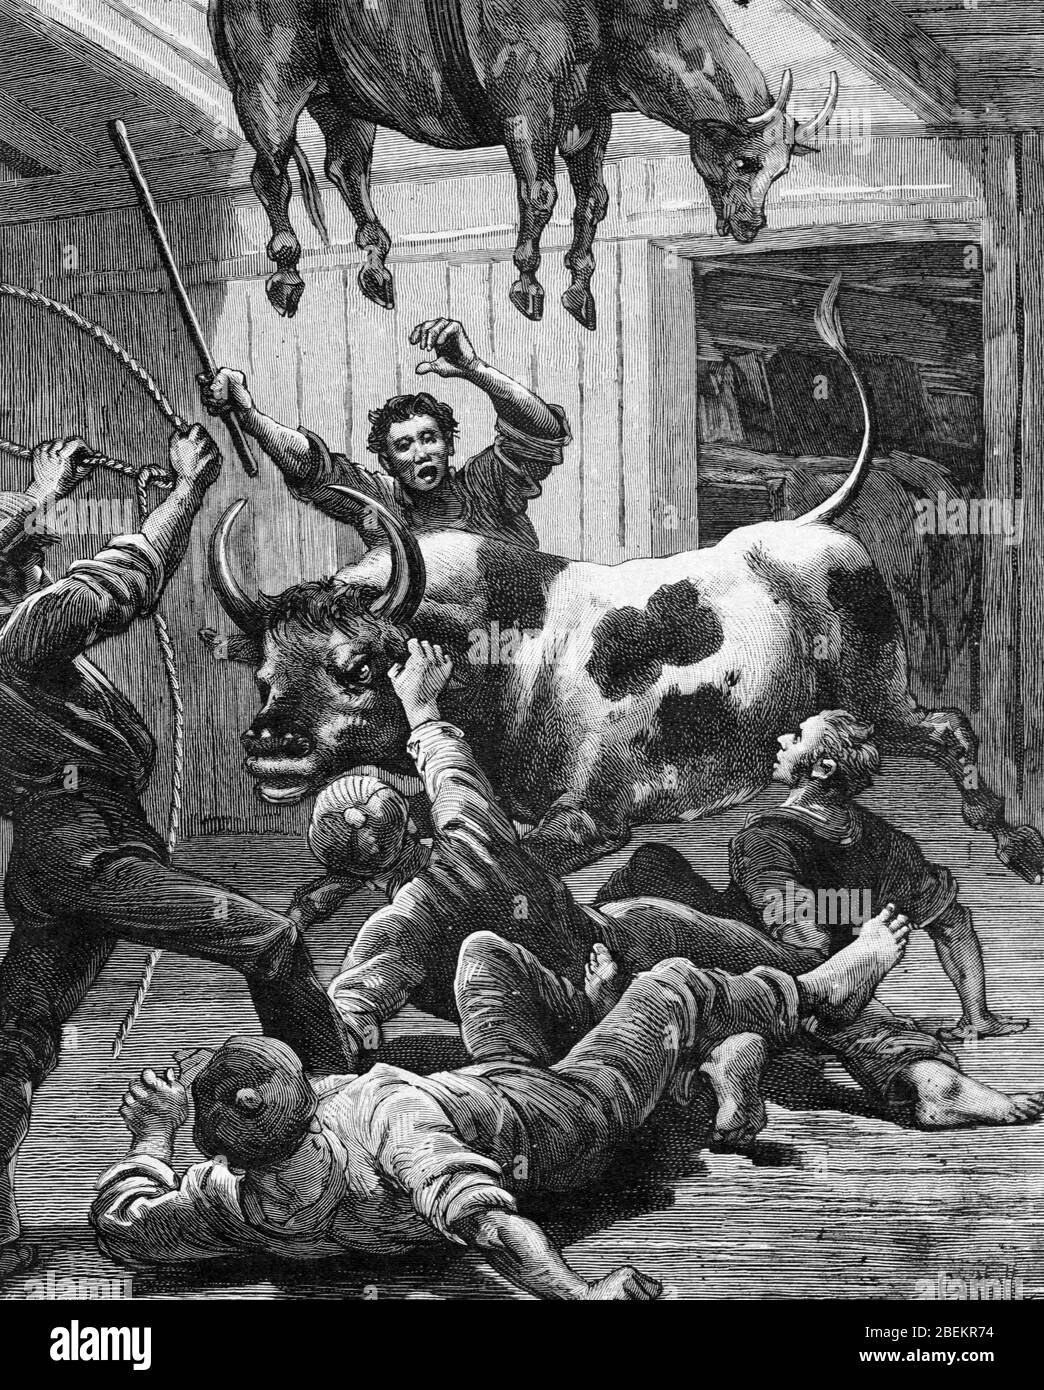 Vaches ou bovins de boucherie chargés en attente de transport de l'Amérique du Sud vers l'Europe. Vintage ou ancienne illustration ou gravure 1887 Banque D'Images